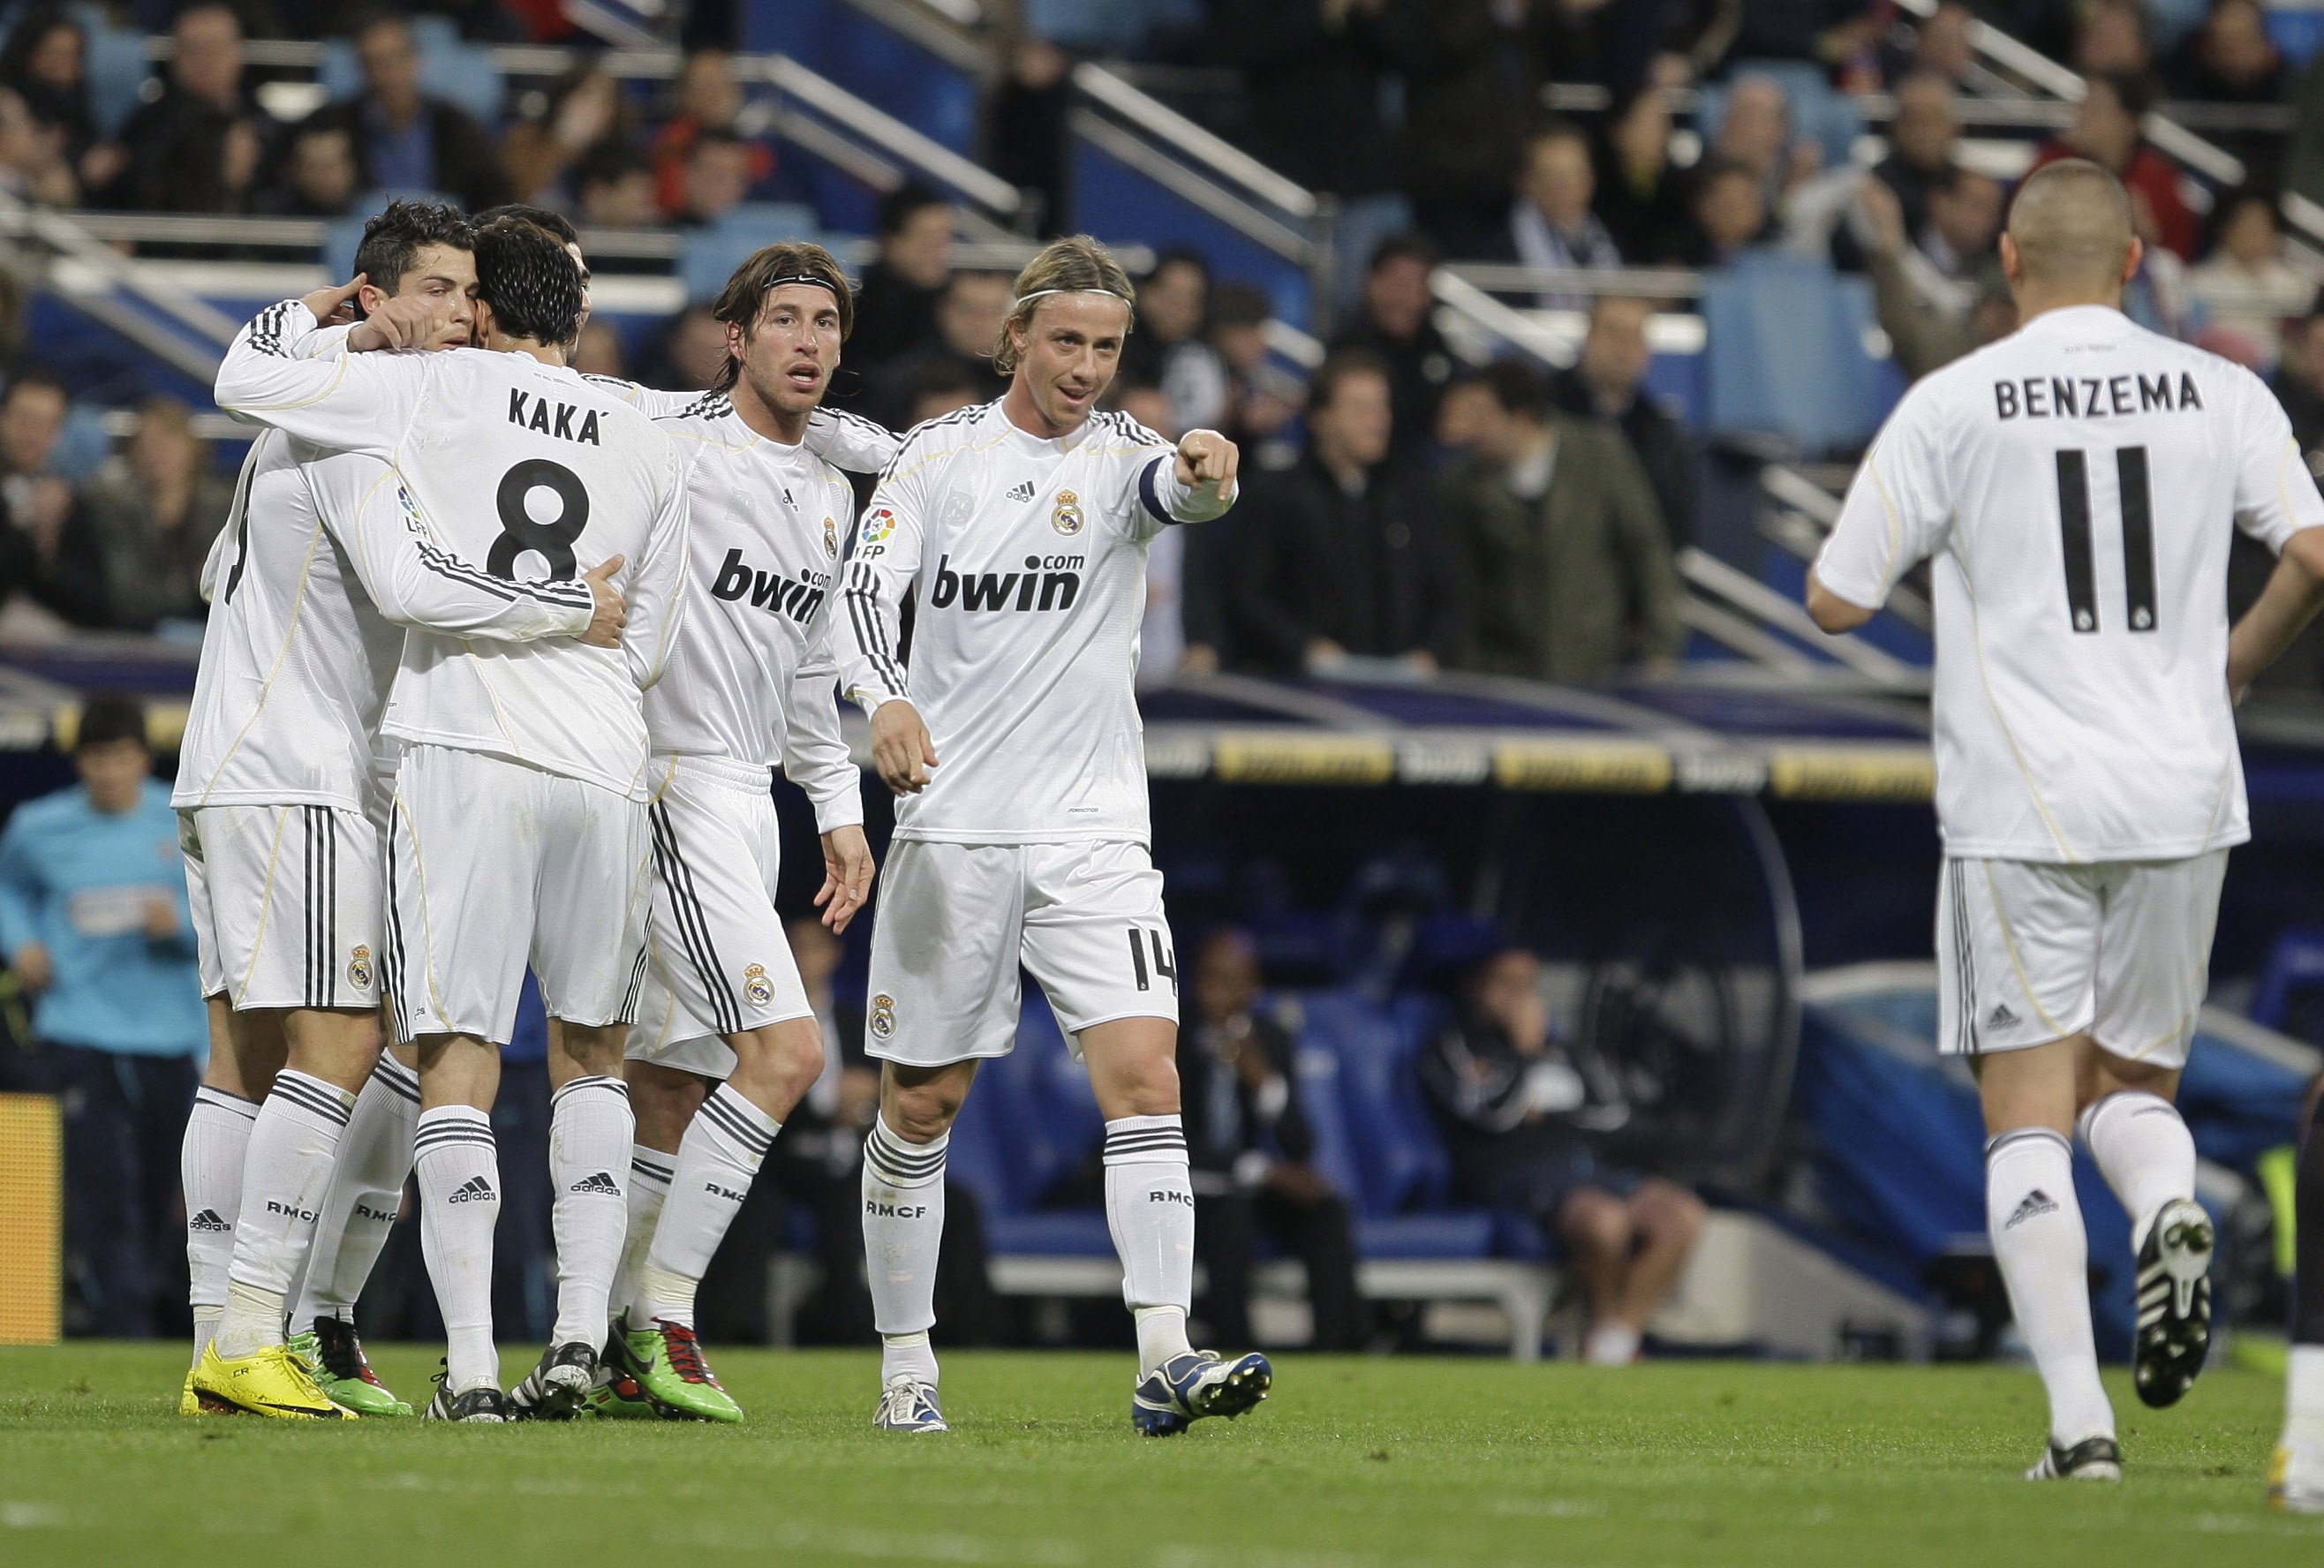 Cristiano Ronaldo, La Liga, Patrick Mtiliga, Real Madrid, Malaga